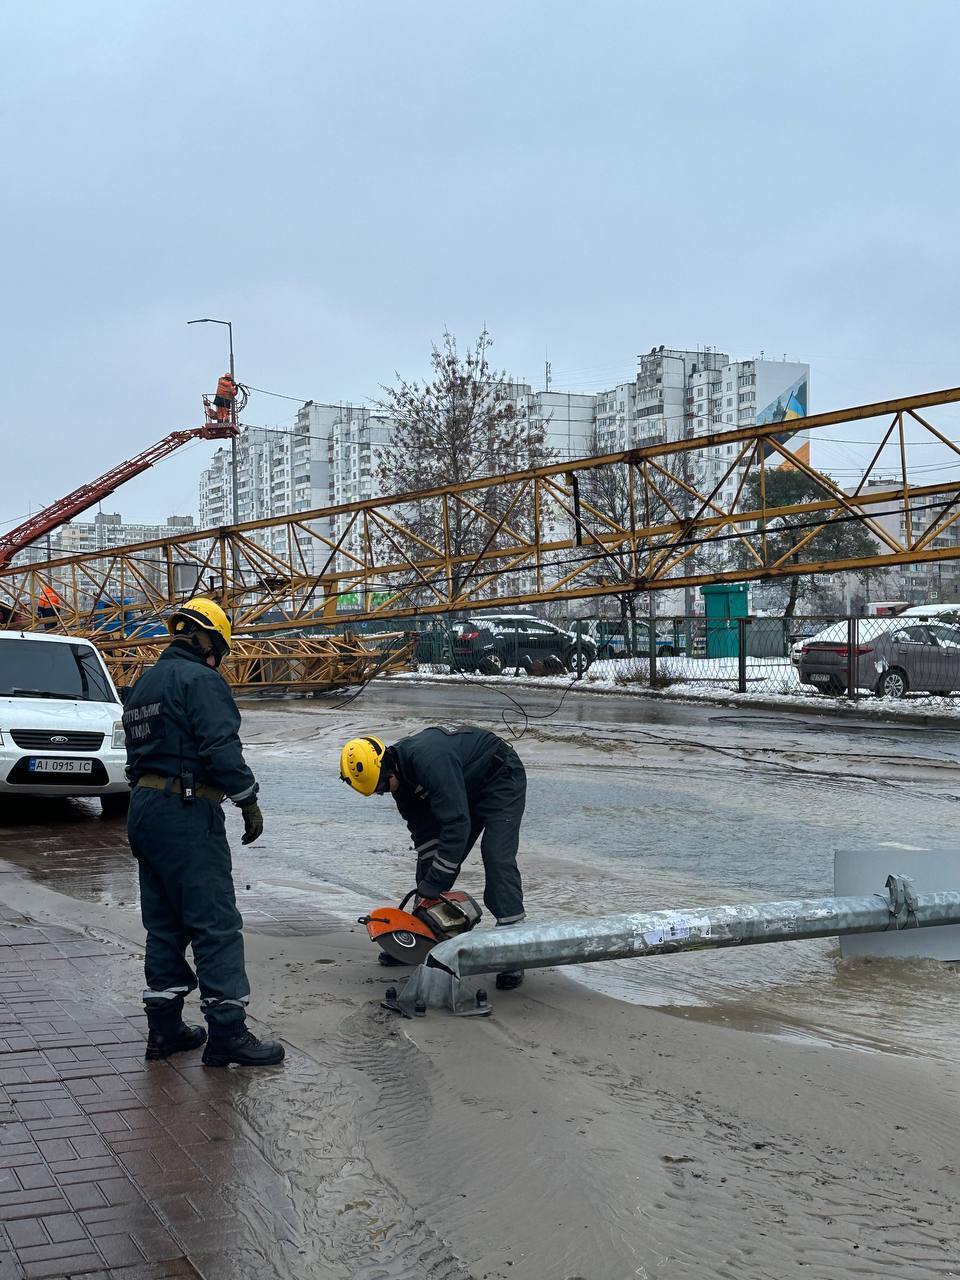 В Киеве прорвало трубу на строительстве и упал кран: улицу затопило, движение авто перекрыли. Фото и видео